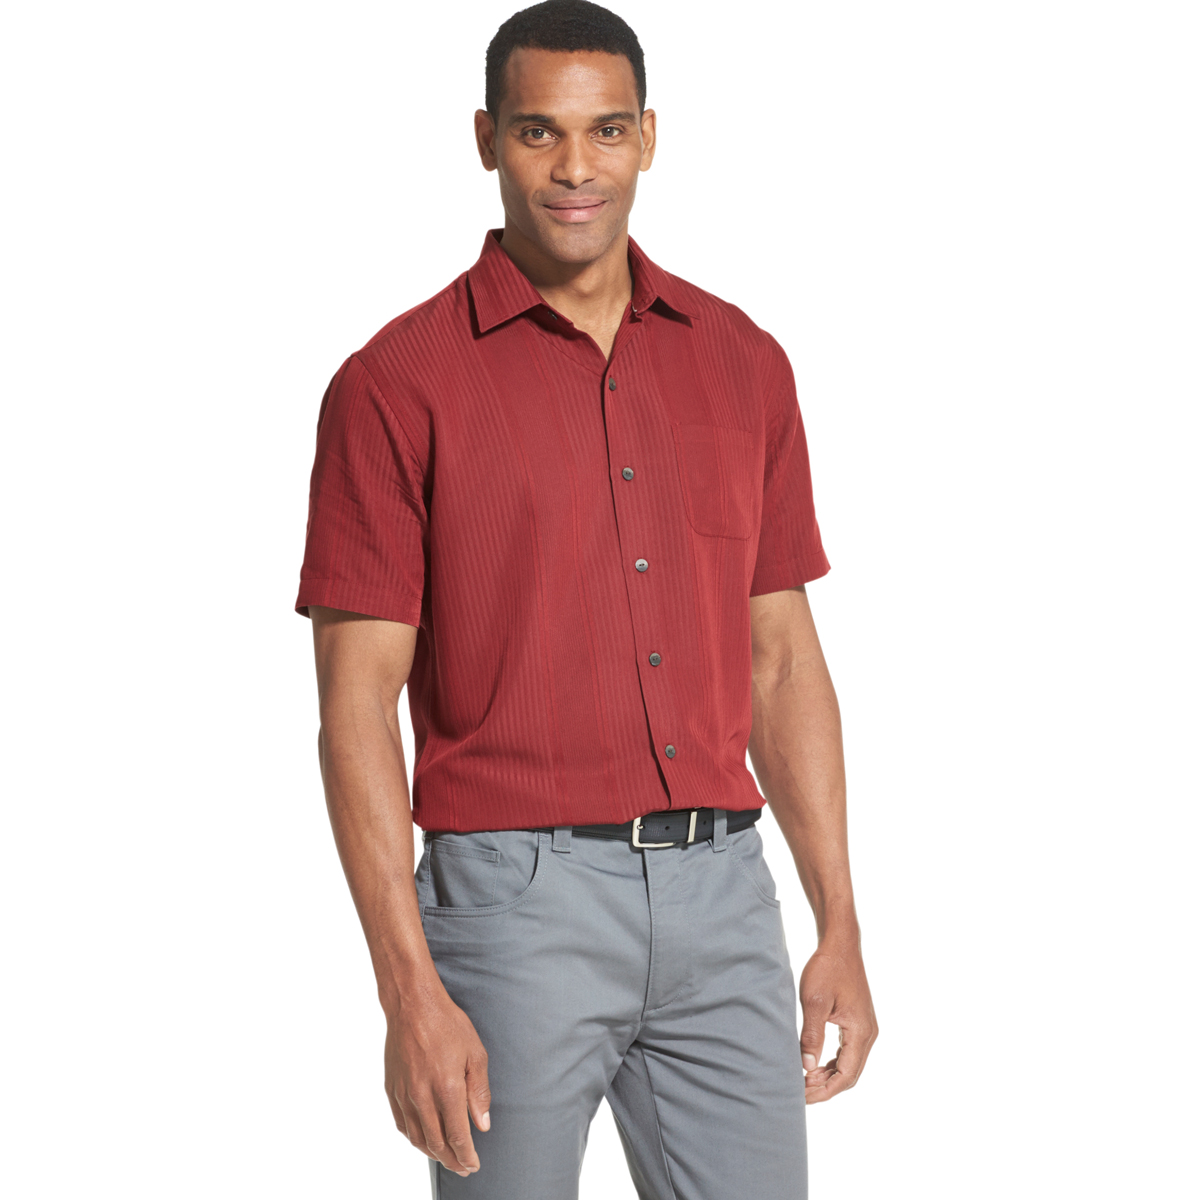 Van Heusen Men's Air Non-Iron Short-Sleeve Shirt - Red, XL